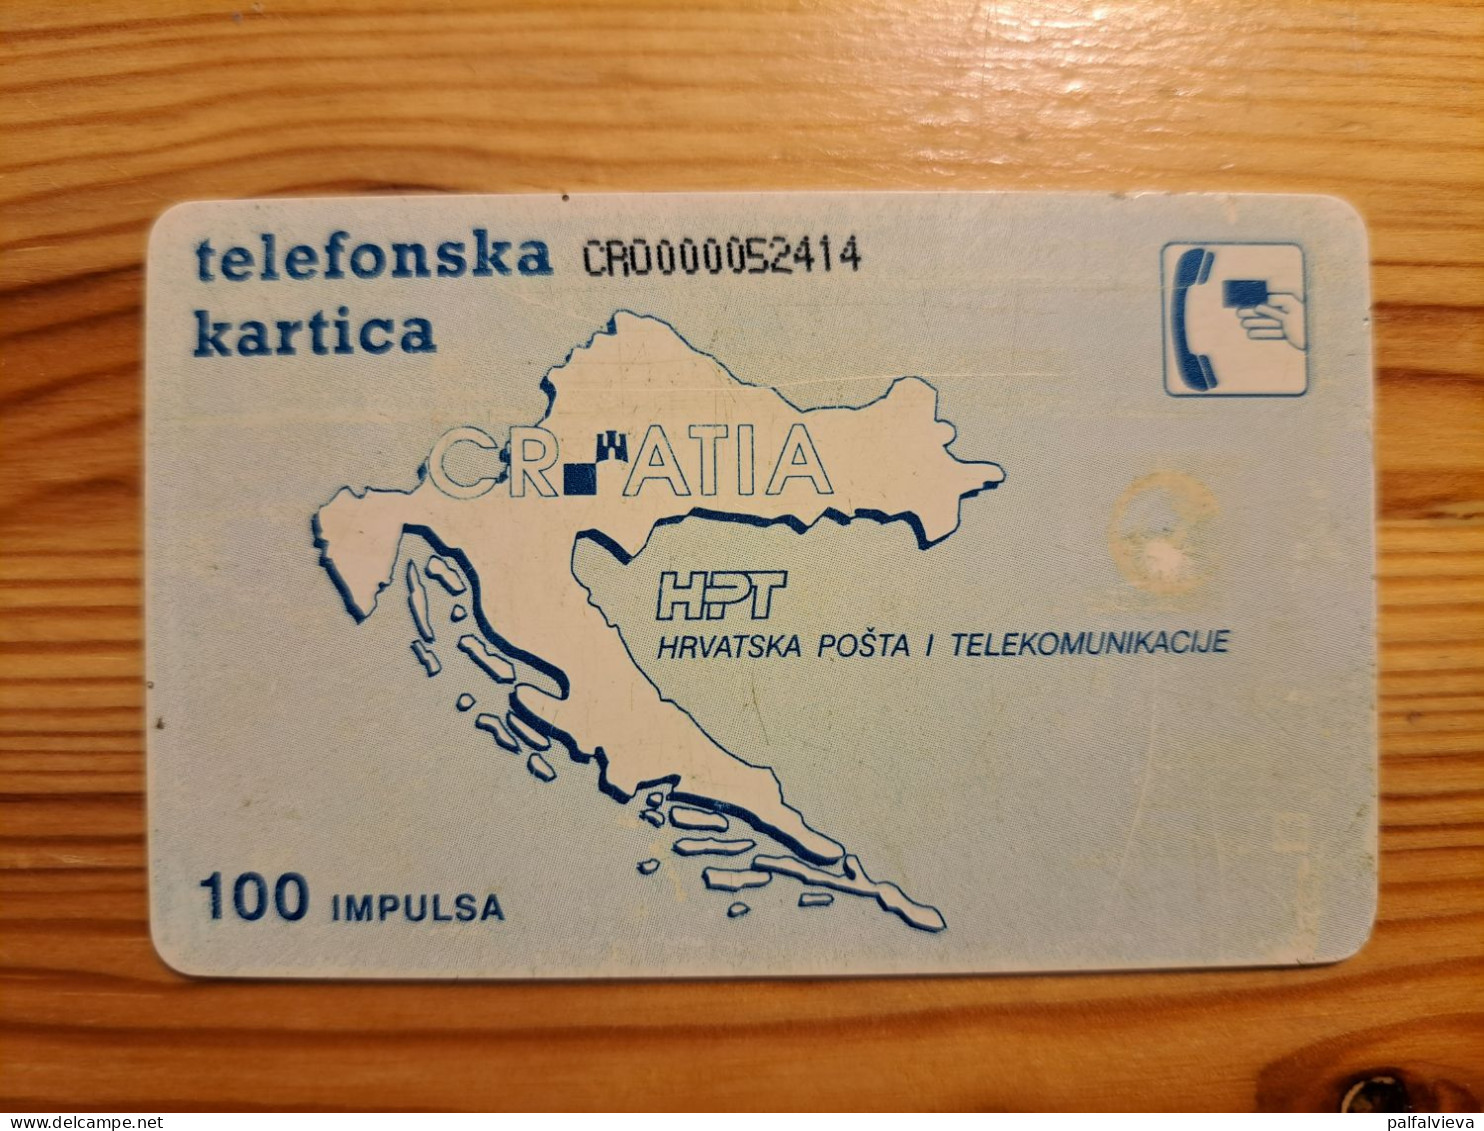 Phonecard Croatia - Painting, Transmadrid S.A. - Croacia